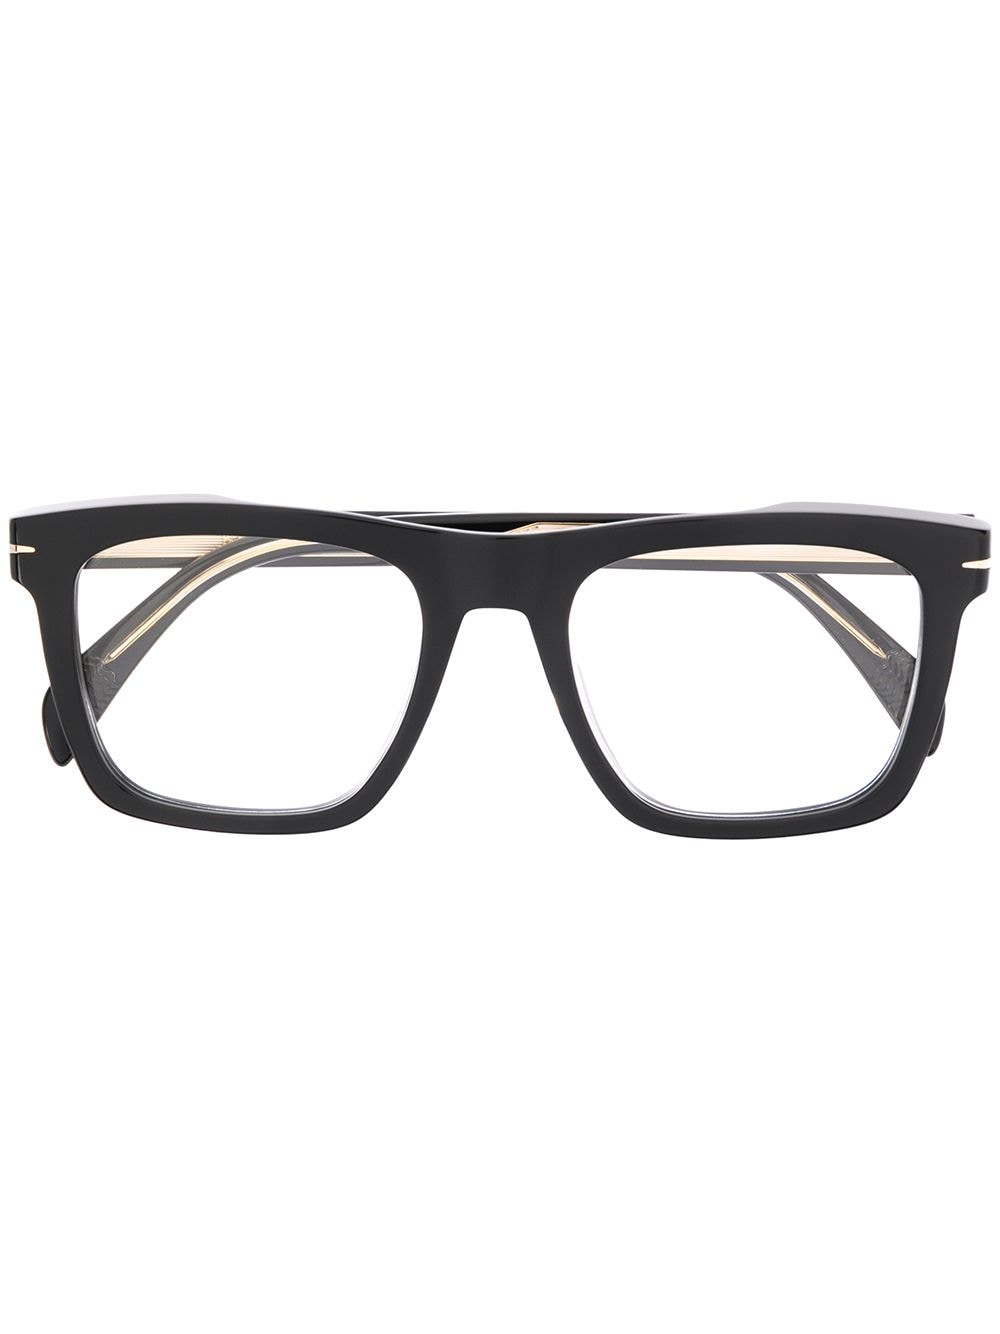 Eyewear by David Beckham rectangle frame glasses - Black von Eyewear by David Beckham